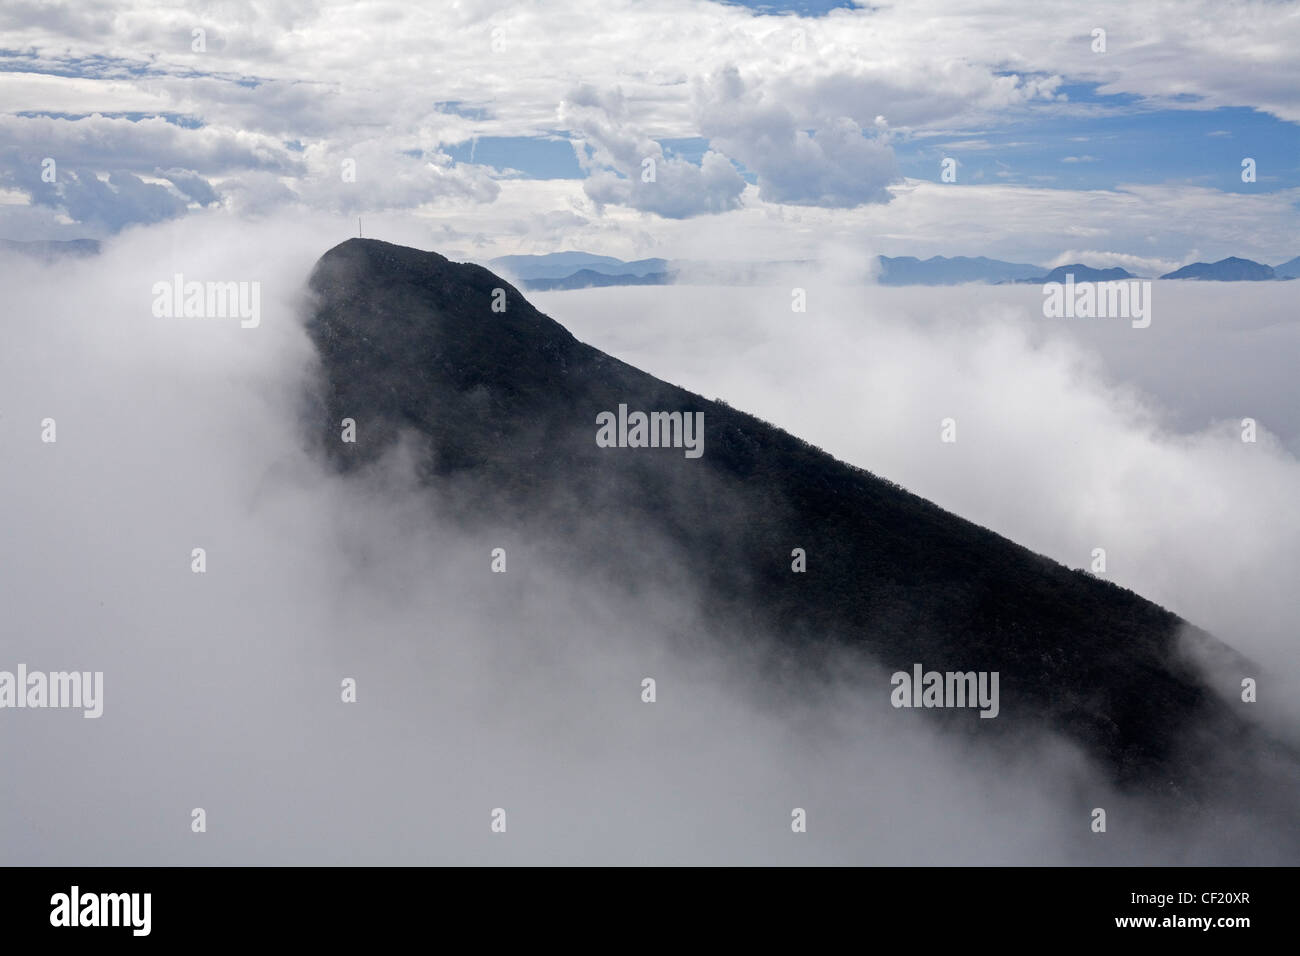 El Pico Norte or the North Peak of Cerro de la Silla, close to Monterrey, Mexico. Stock Photo